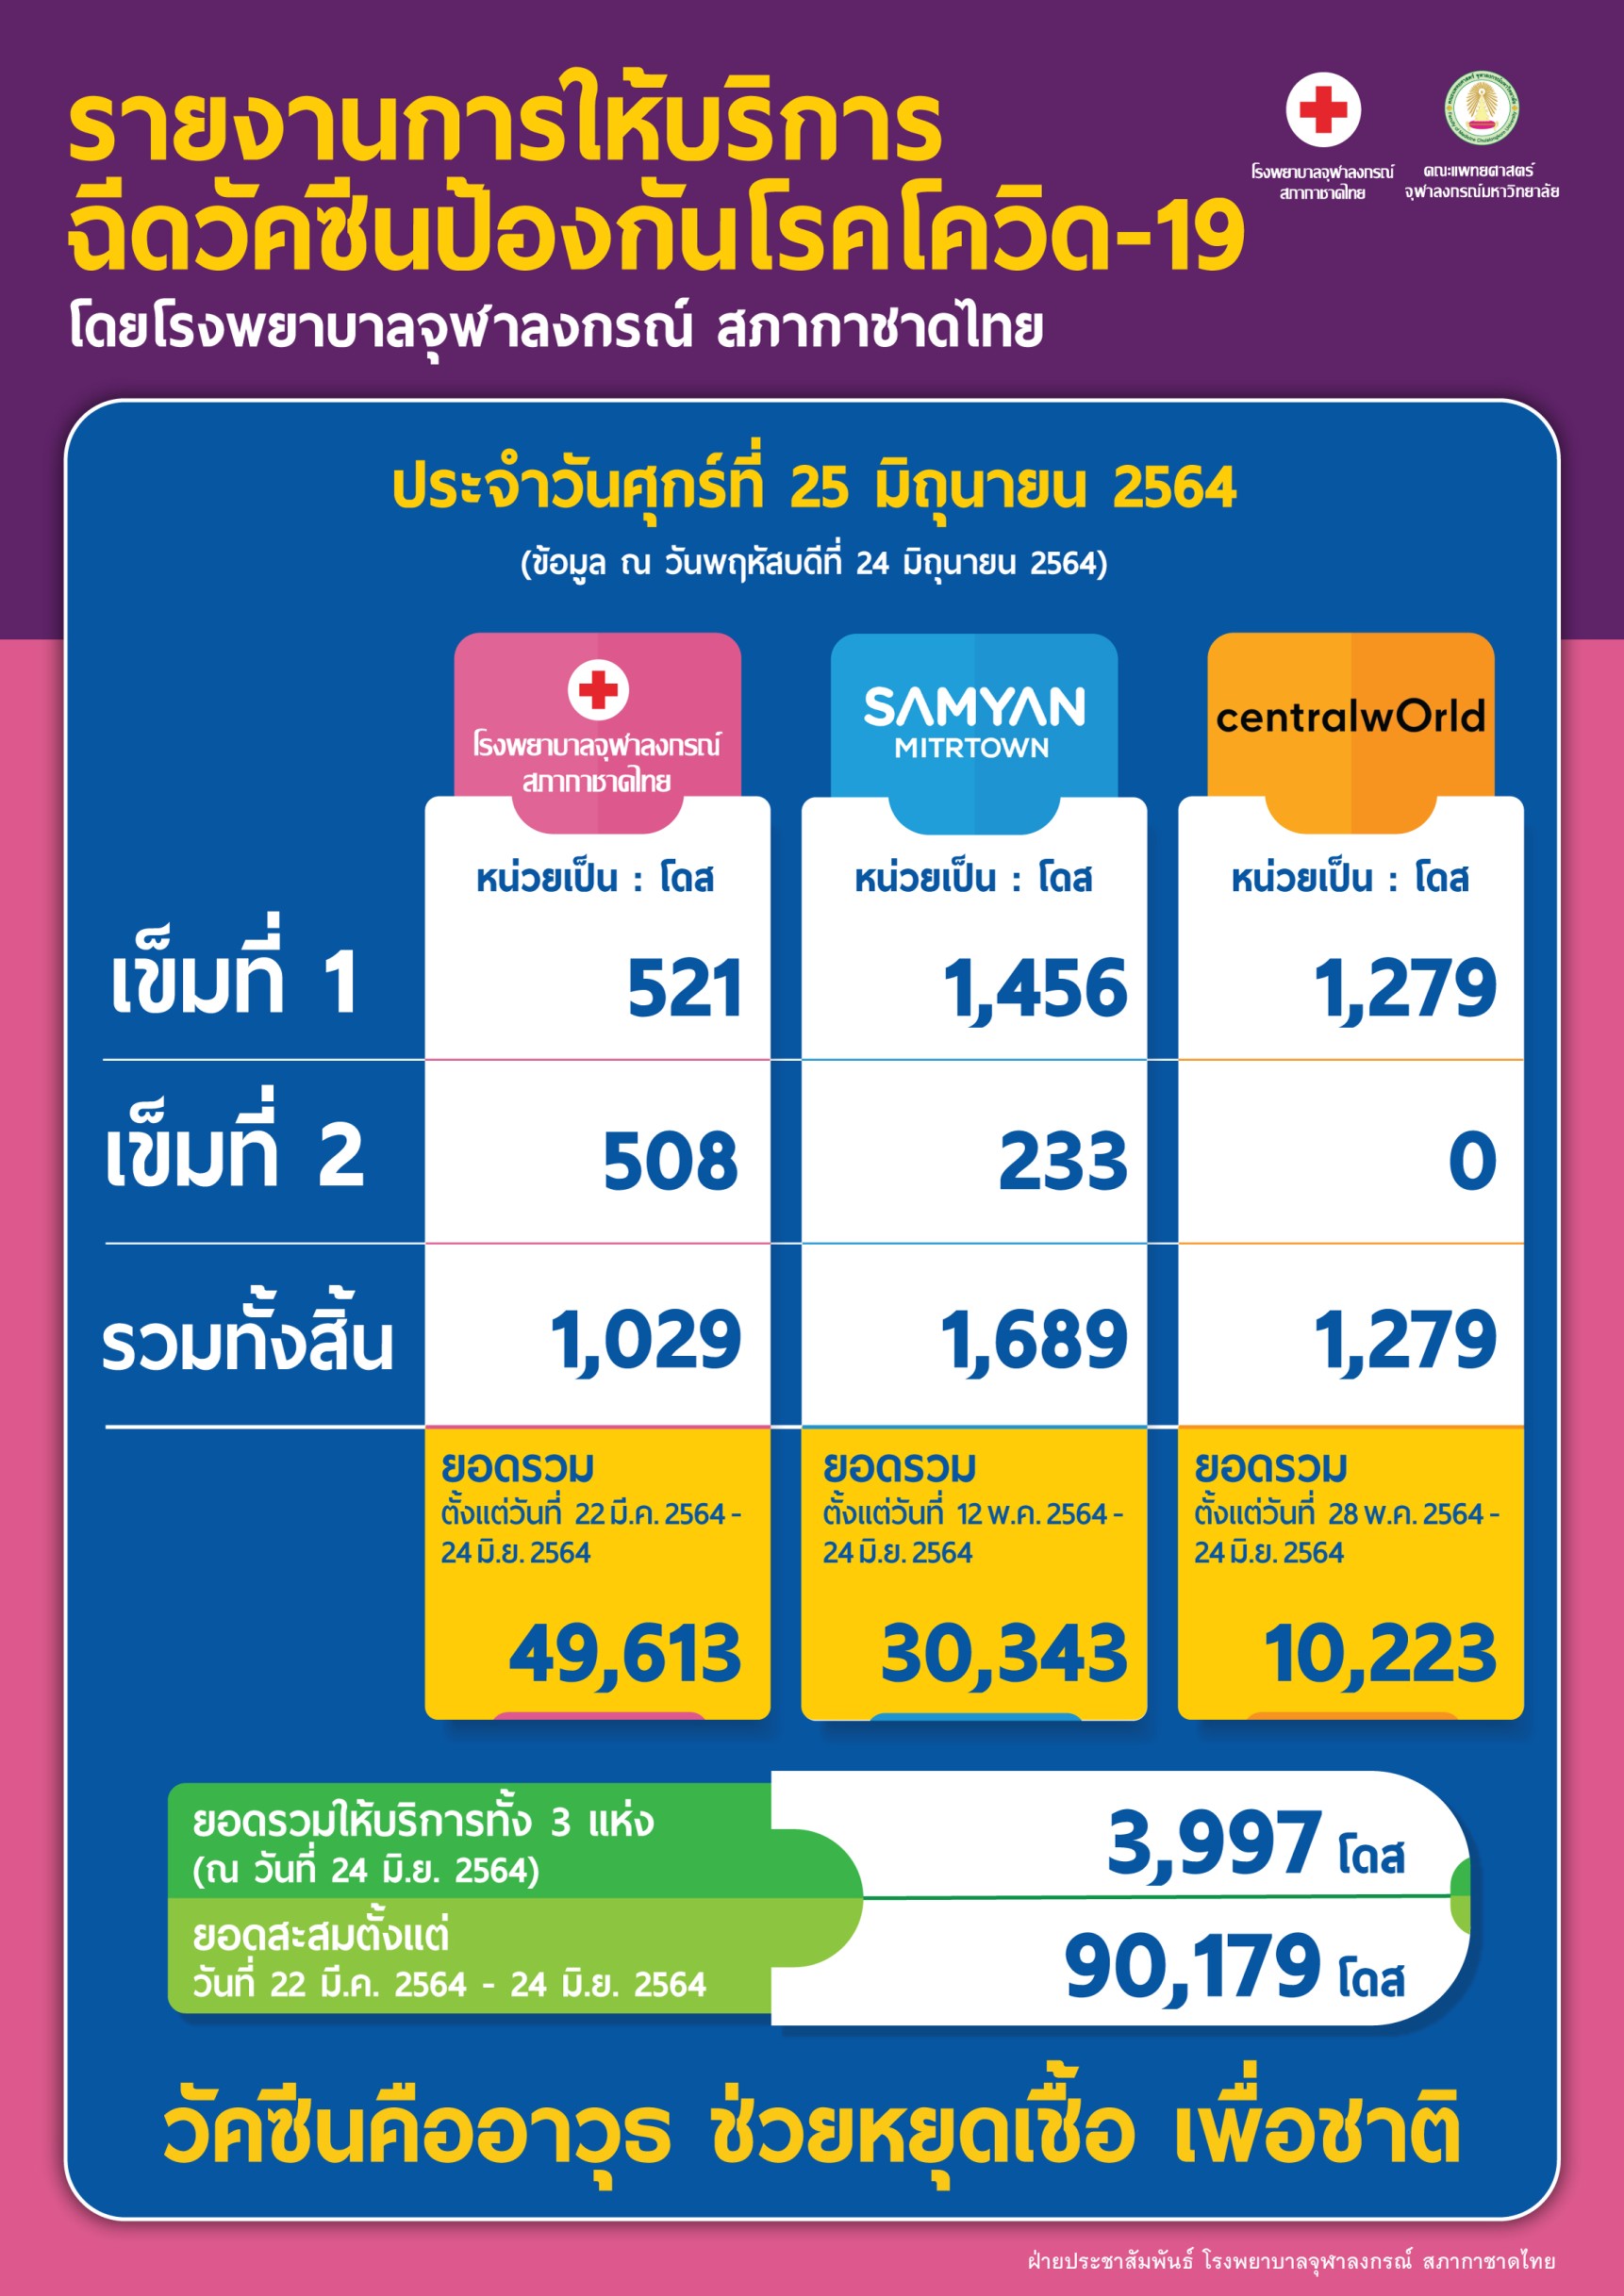 รายงานการให้บริการ ฉีดวัคซีนป้องกันโรคโควิด-19 โดยโรงพยาบาลจุฬาลงกรณ์ สภากาชาดไทย ประจำวันศุกร์ที่ 25 มิถุนายน 2564